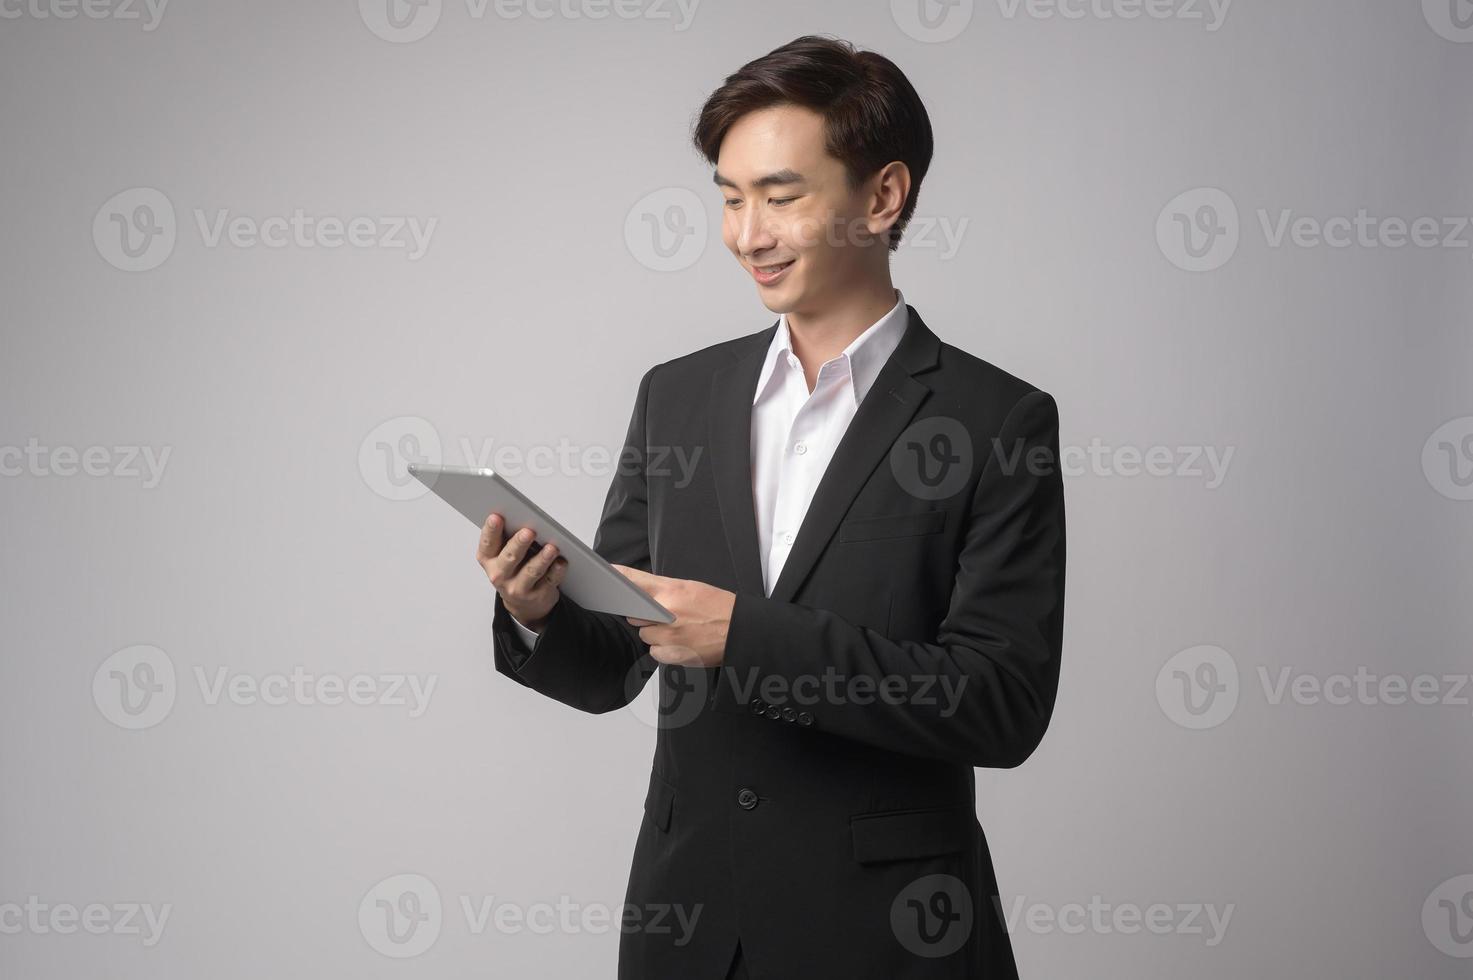 jonge zakenman die kostuum over witte achtergrond draagt studio foto